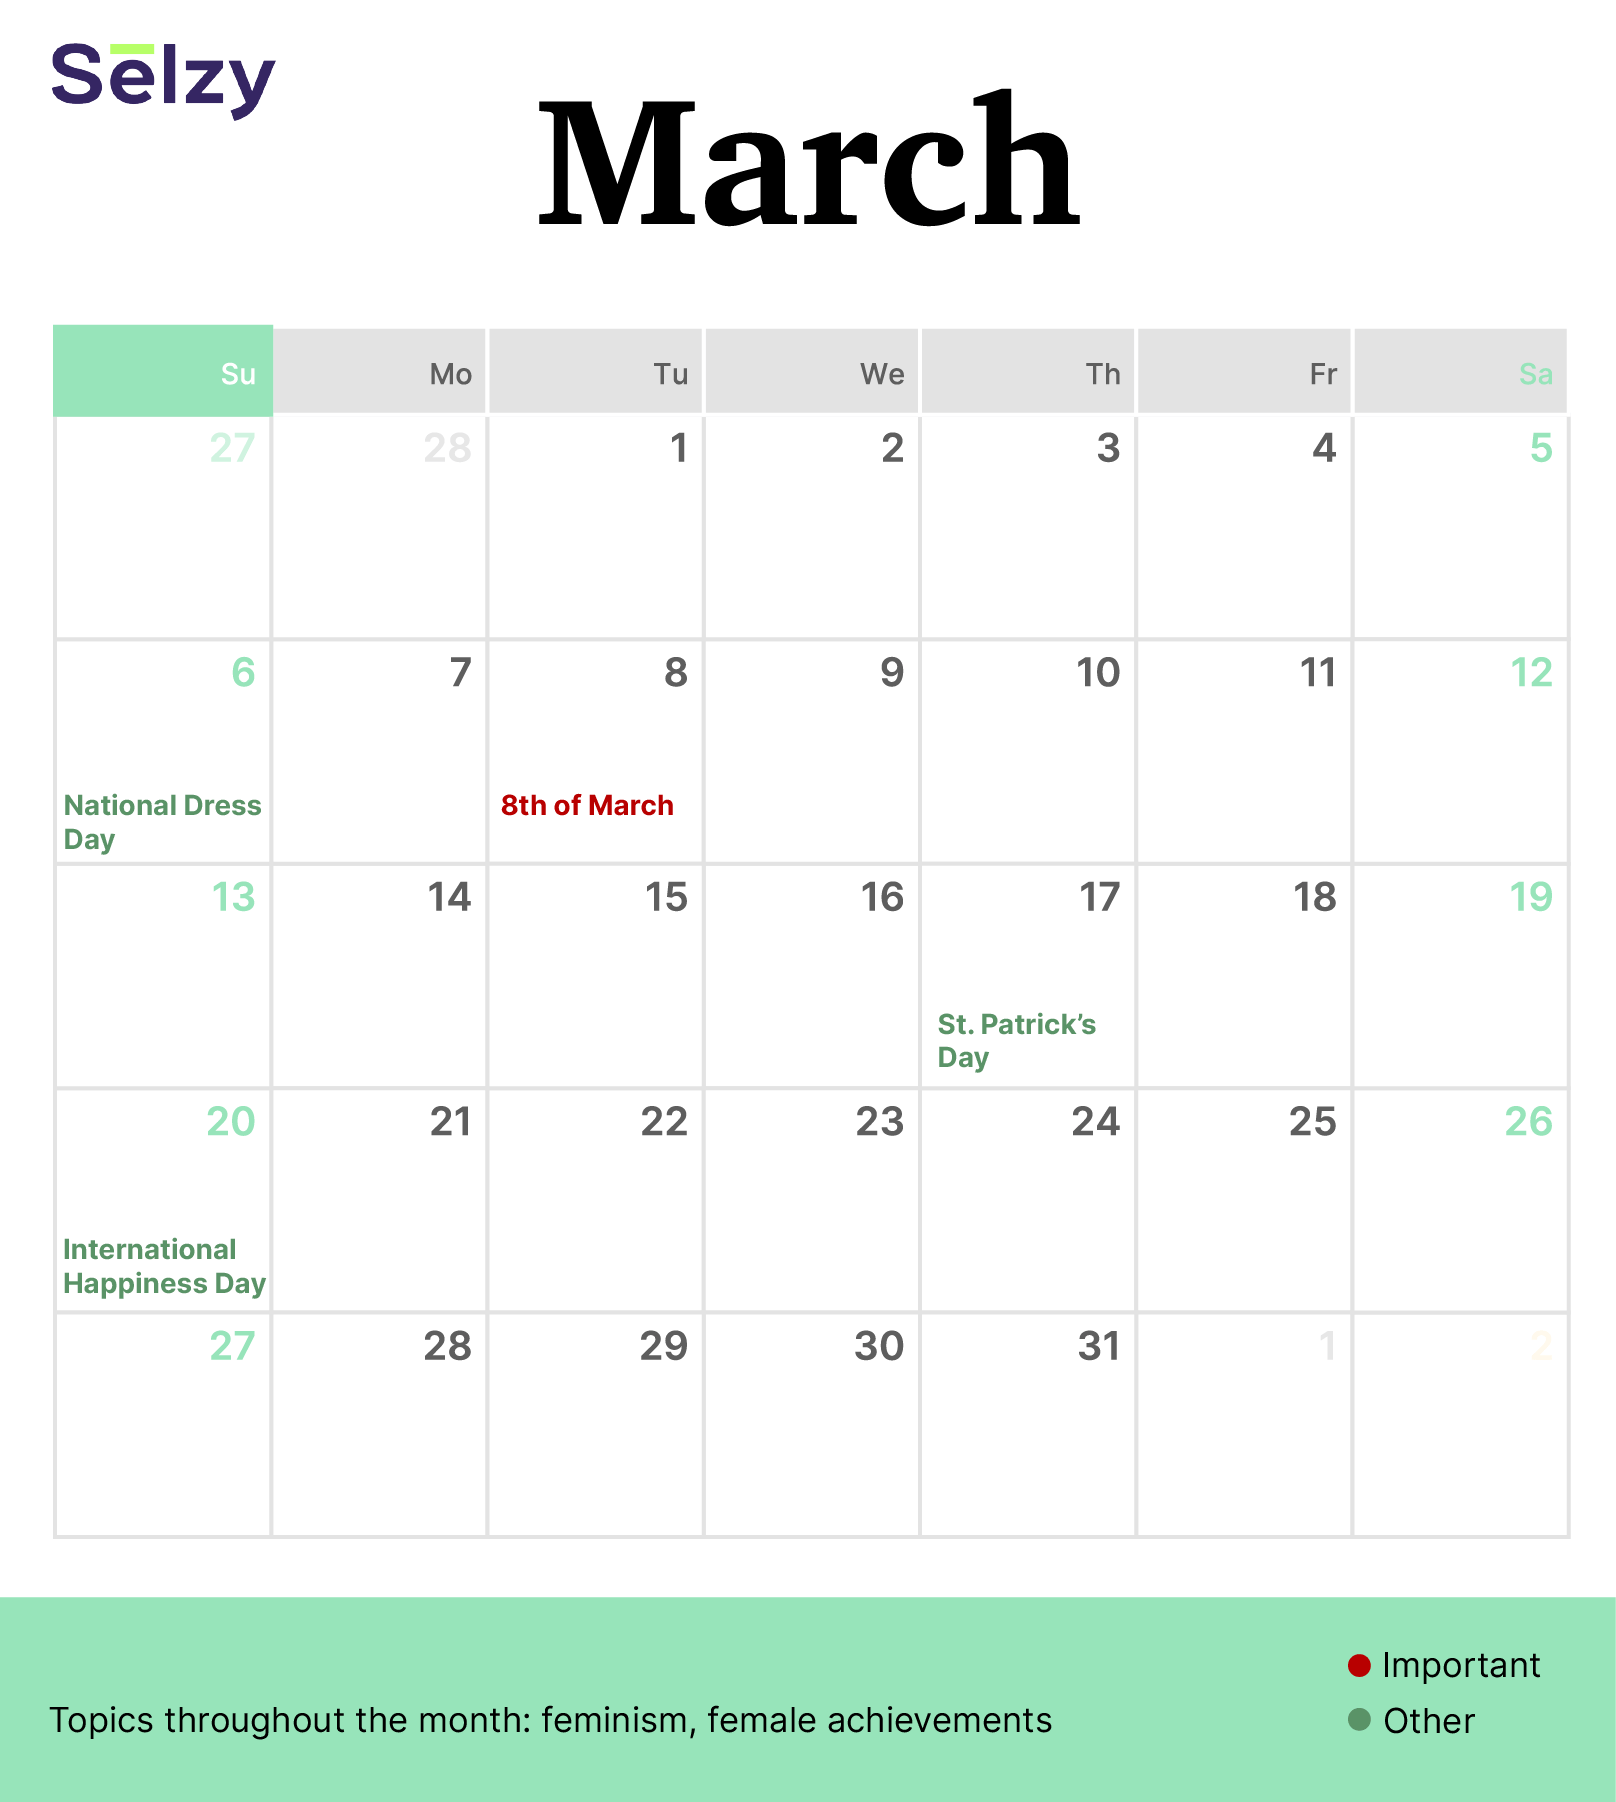 Holiday Marketing Calendar – March